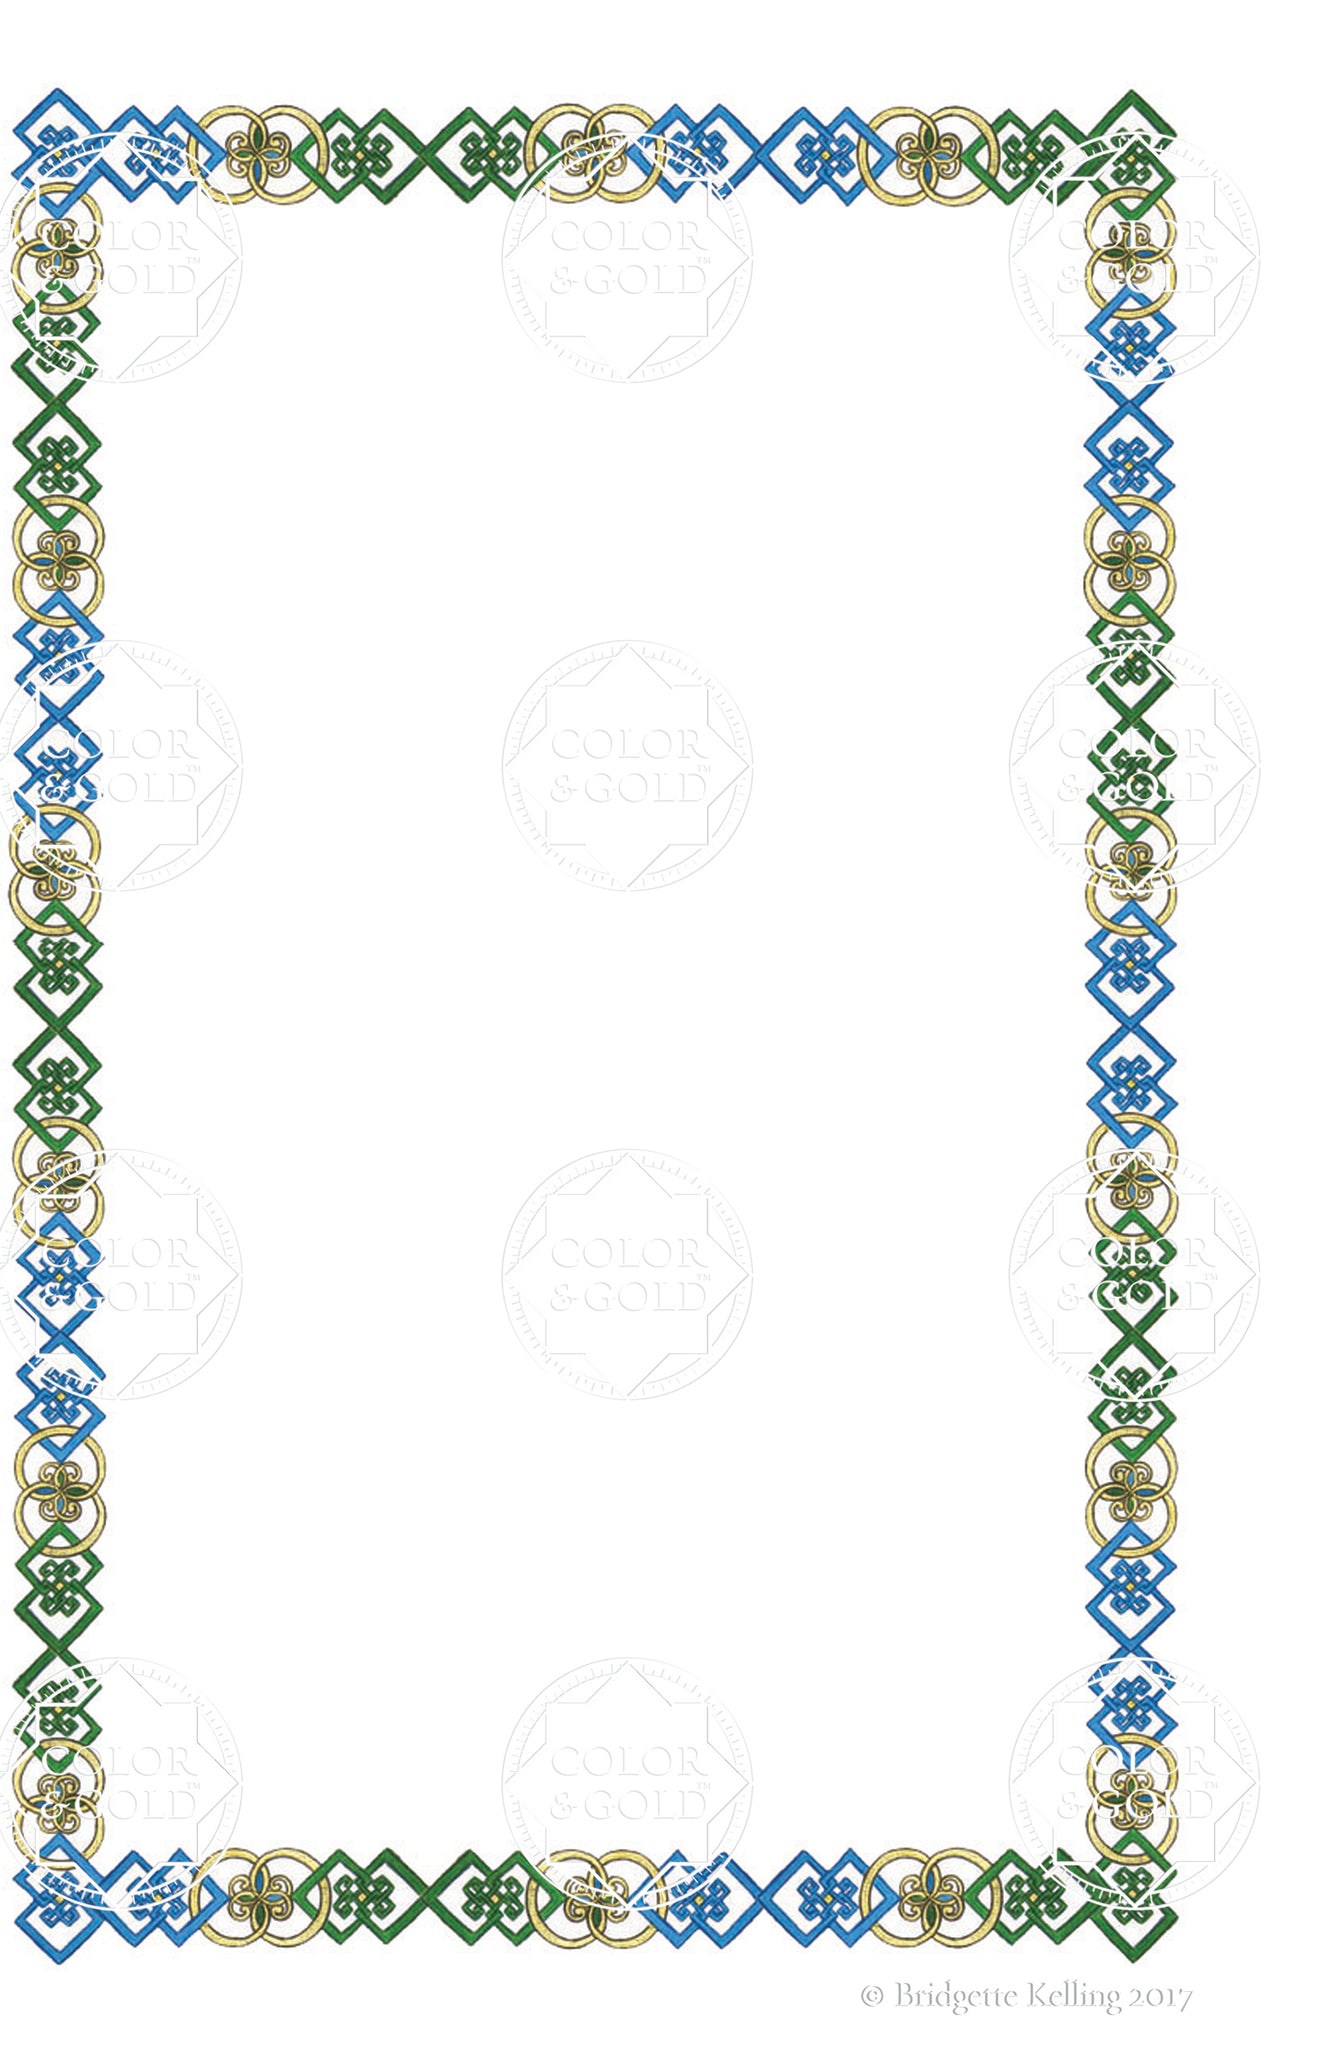 Custom green & blue colored pencil ornamental border clip art - Color & Gold LLC © Bridgette Kelling